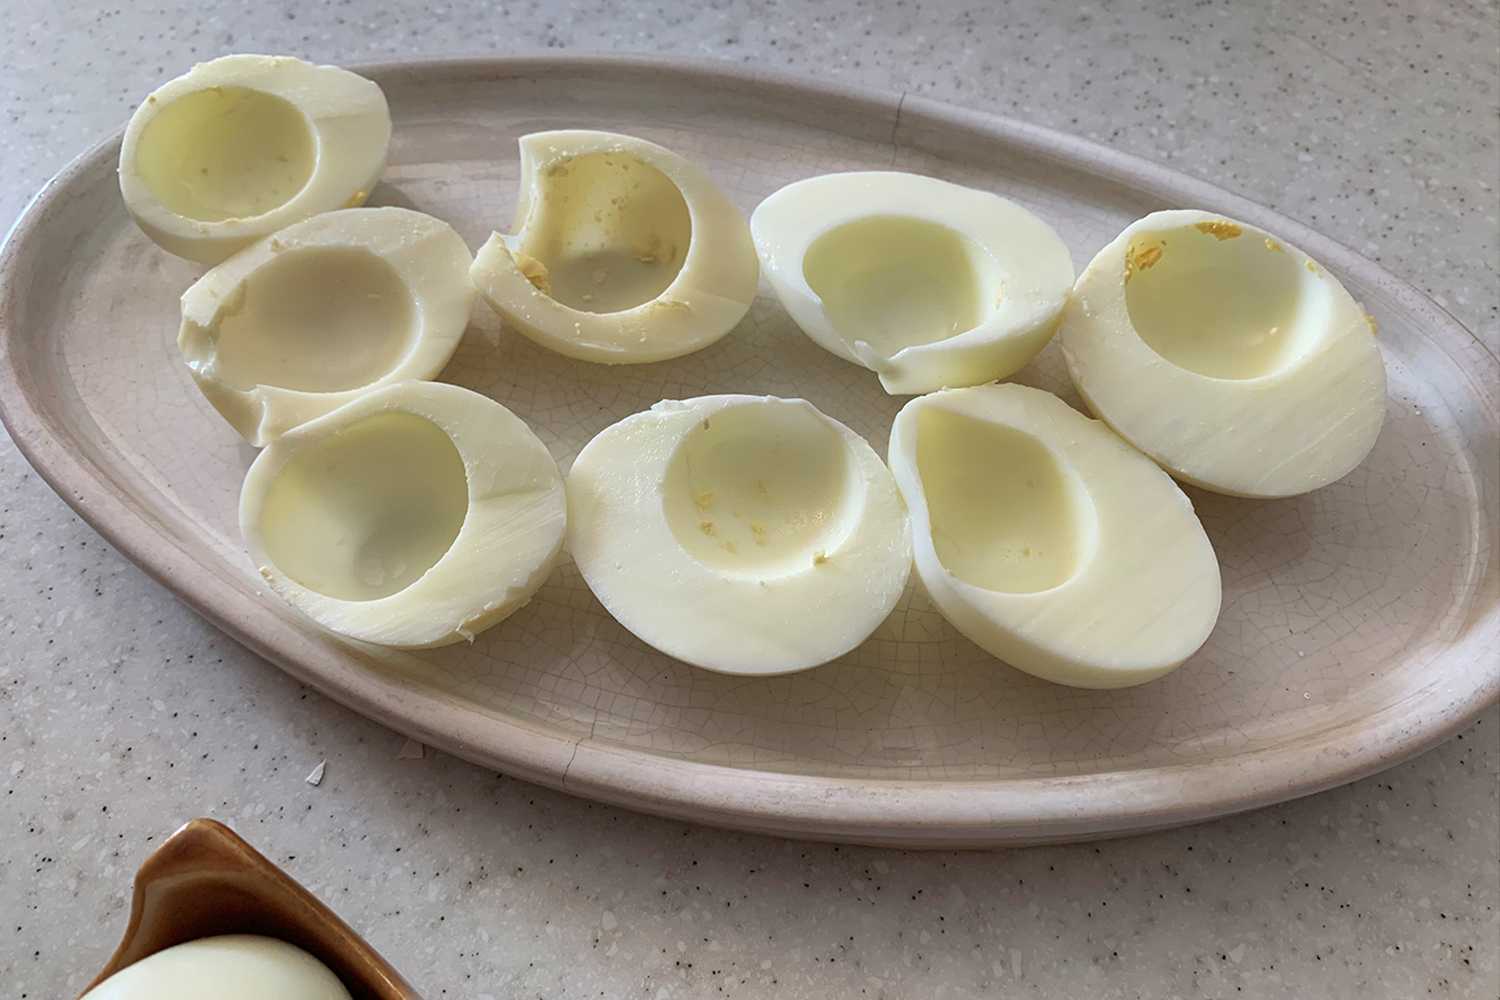 Instant Pot Deviled Eggs